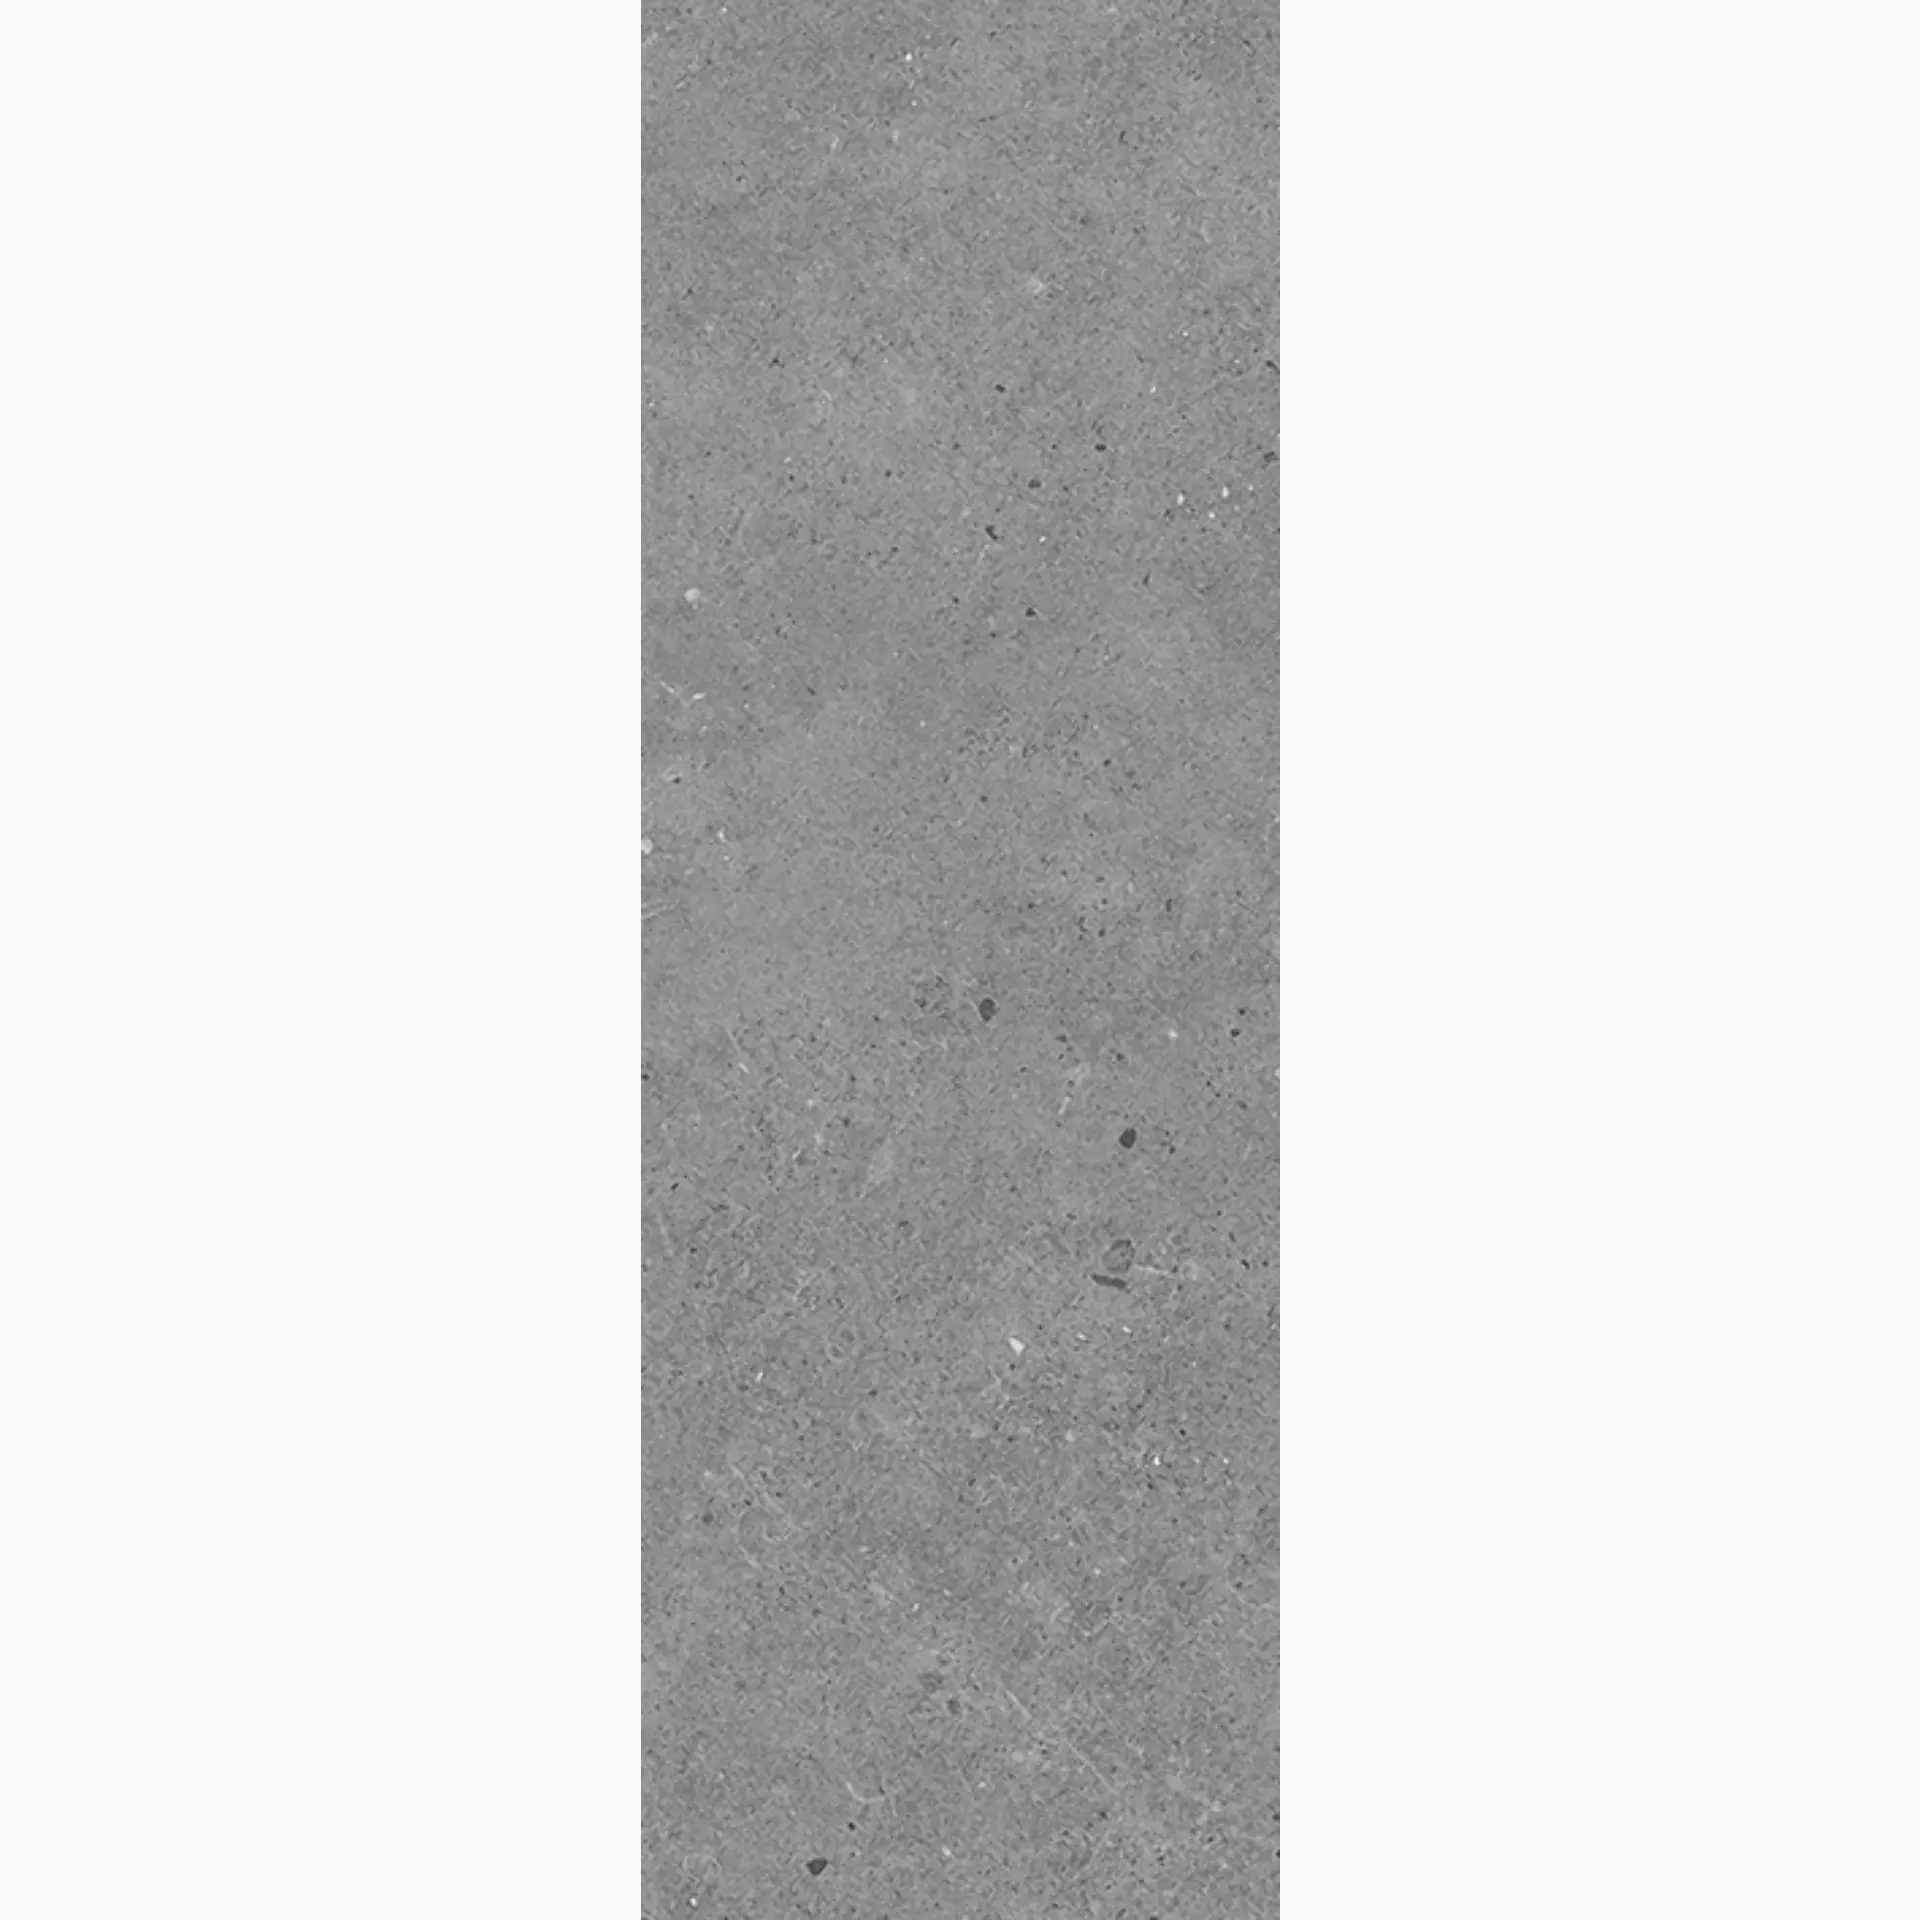 Wandfliese,Bodenfliese Villeroy & Boch Solid Tones Pure Concrete Matt Pure Concrete 2621-PC61 matt 20x60cm rektifiziert 10mm